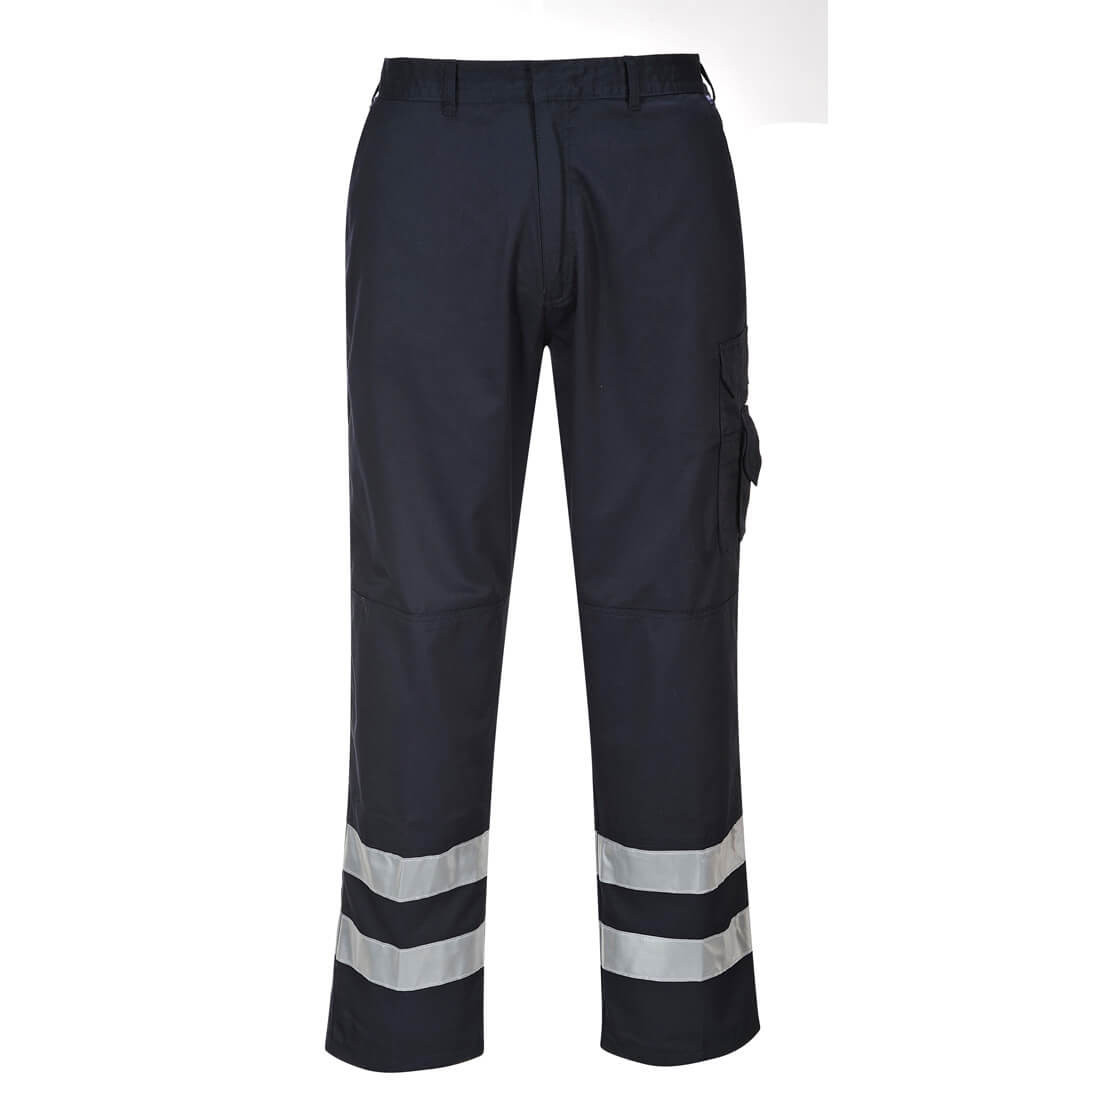 Pantalones de seguridad Iona - Ropa de protección